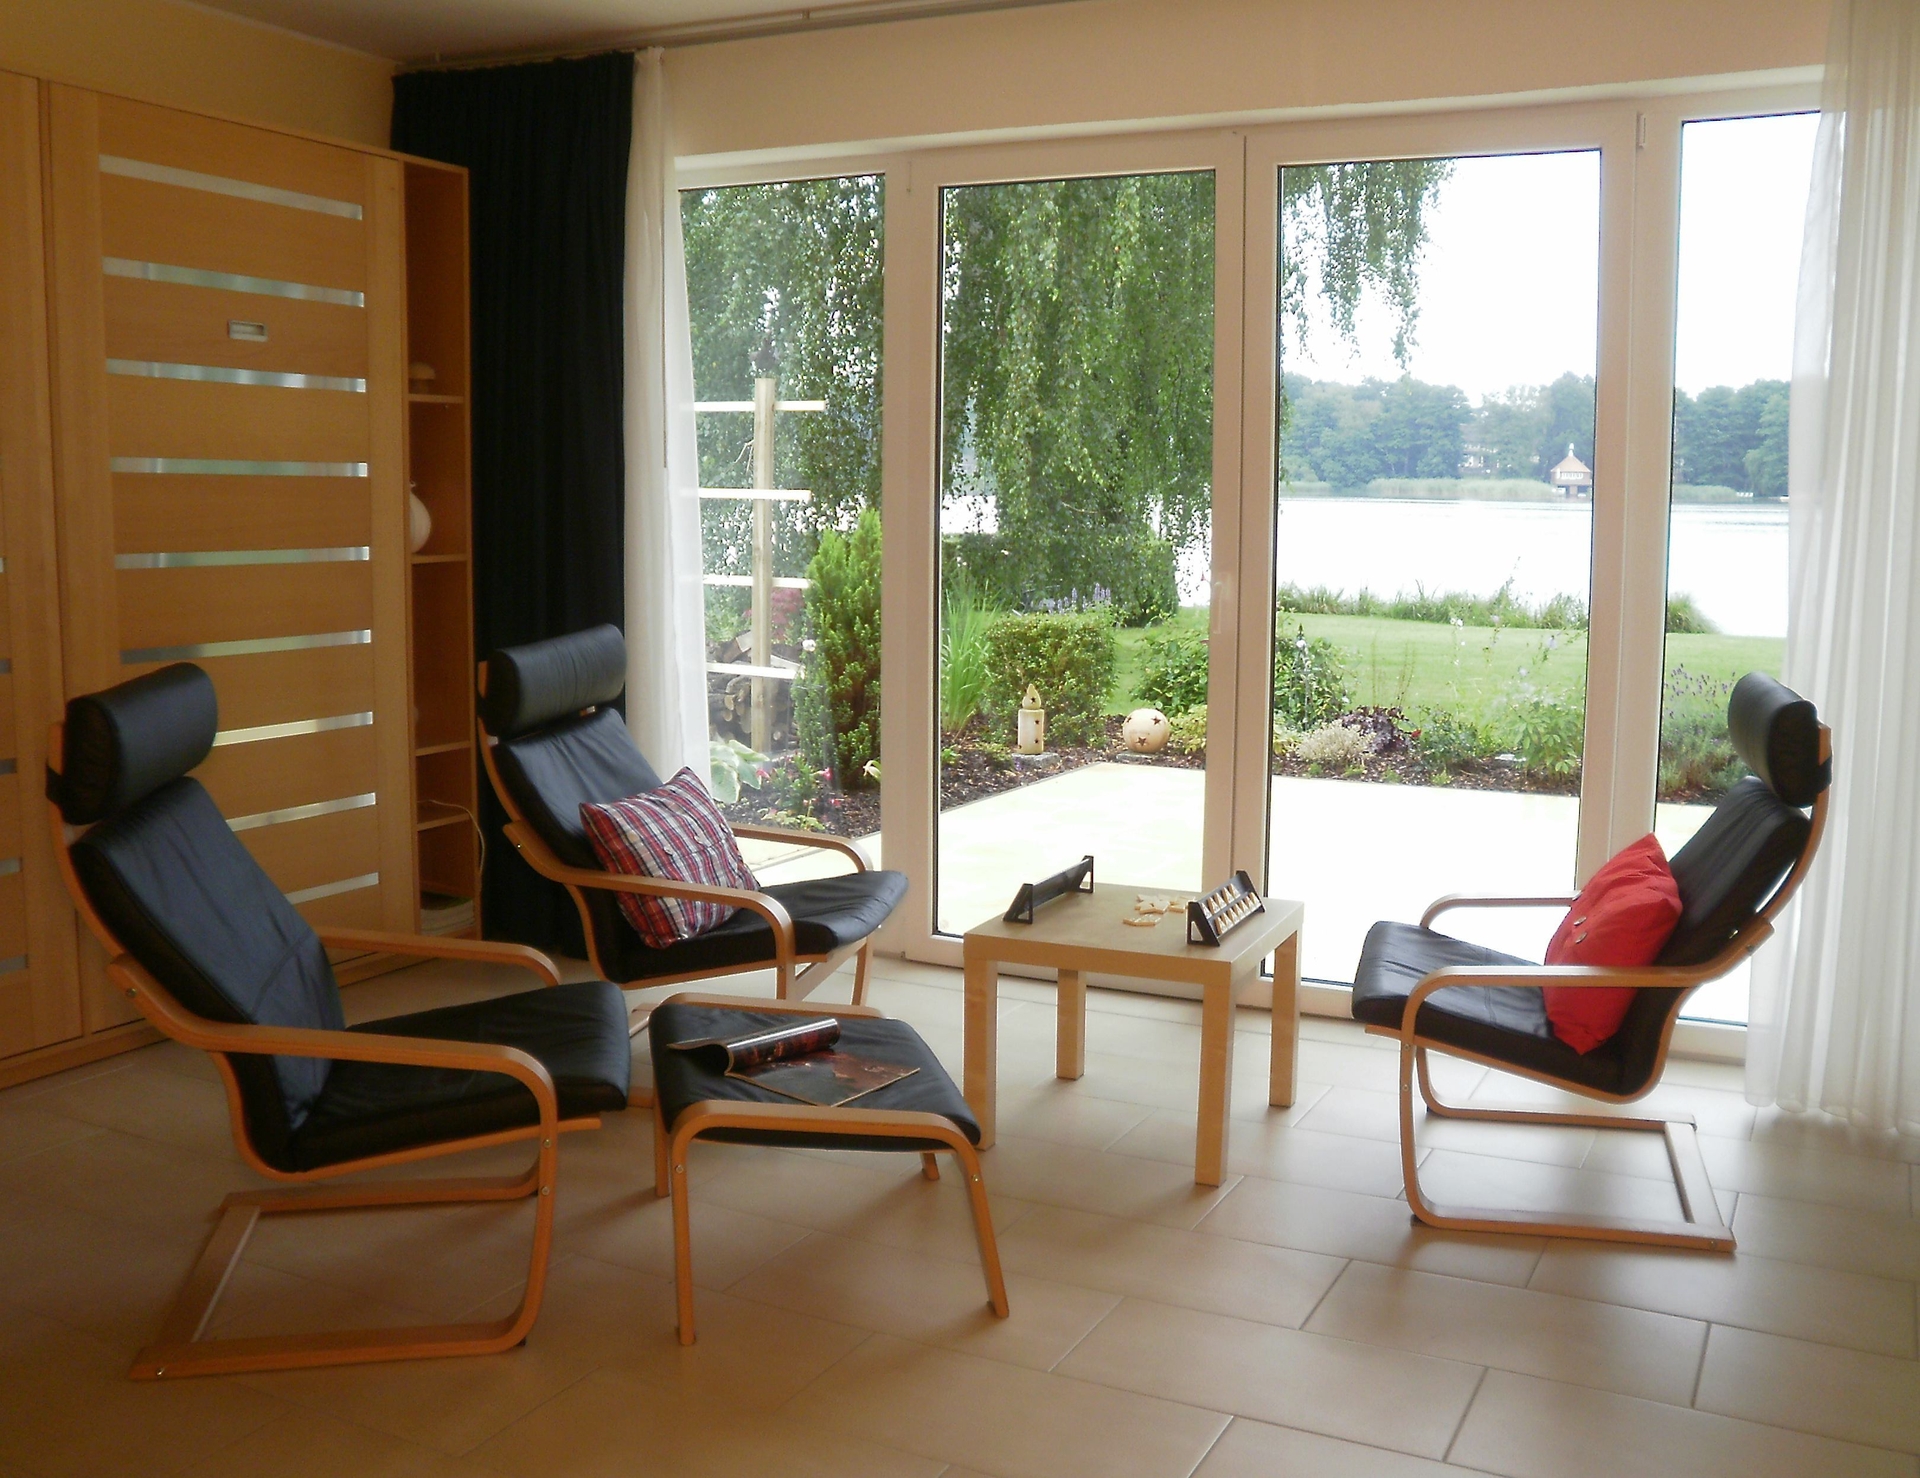 Bild: Der Wohnbereich mit lederbezogener Sitzgruppe mit Couchtisch gewährt Aussicht auf den See und einen direkten Übergang auf die Terrasse und in den Außenbereich.